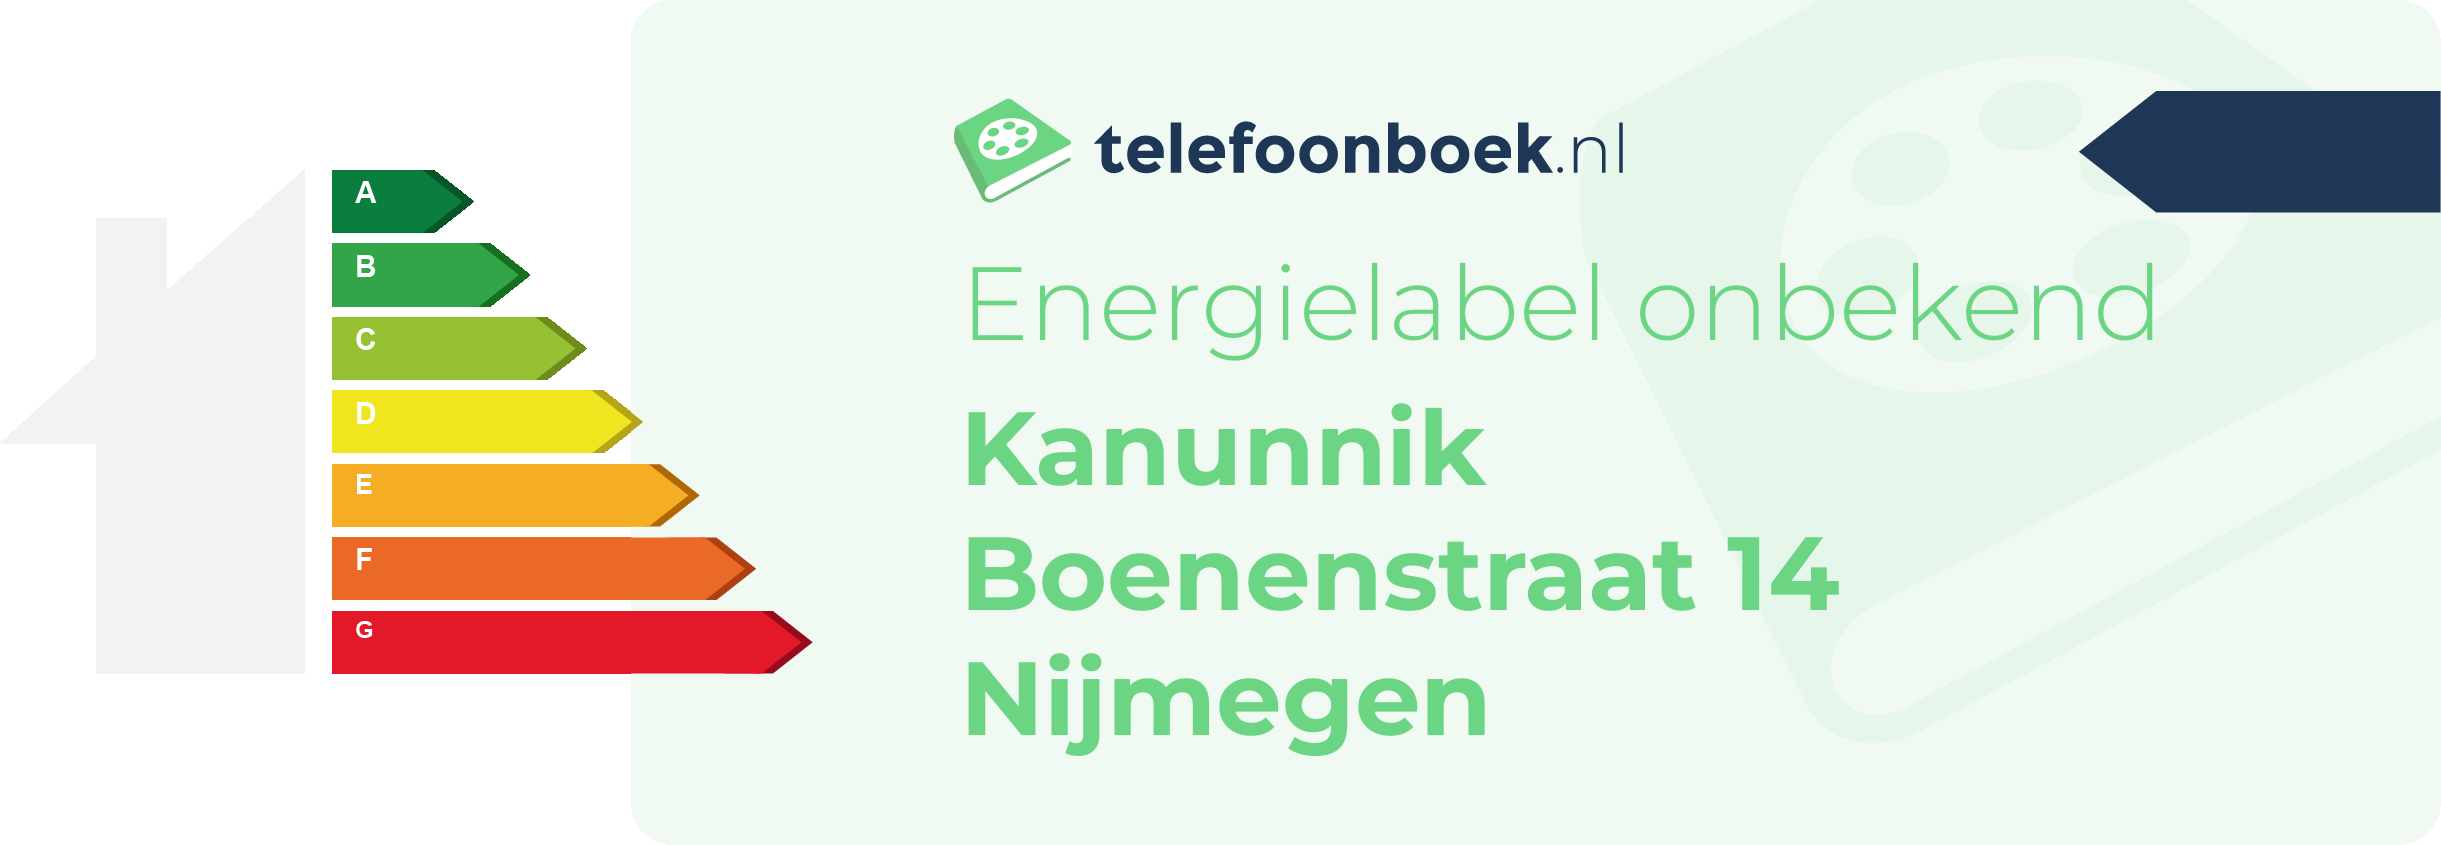 Energielabel Kanunnik Boenenstraat 14 Nijmegen